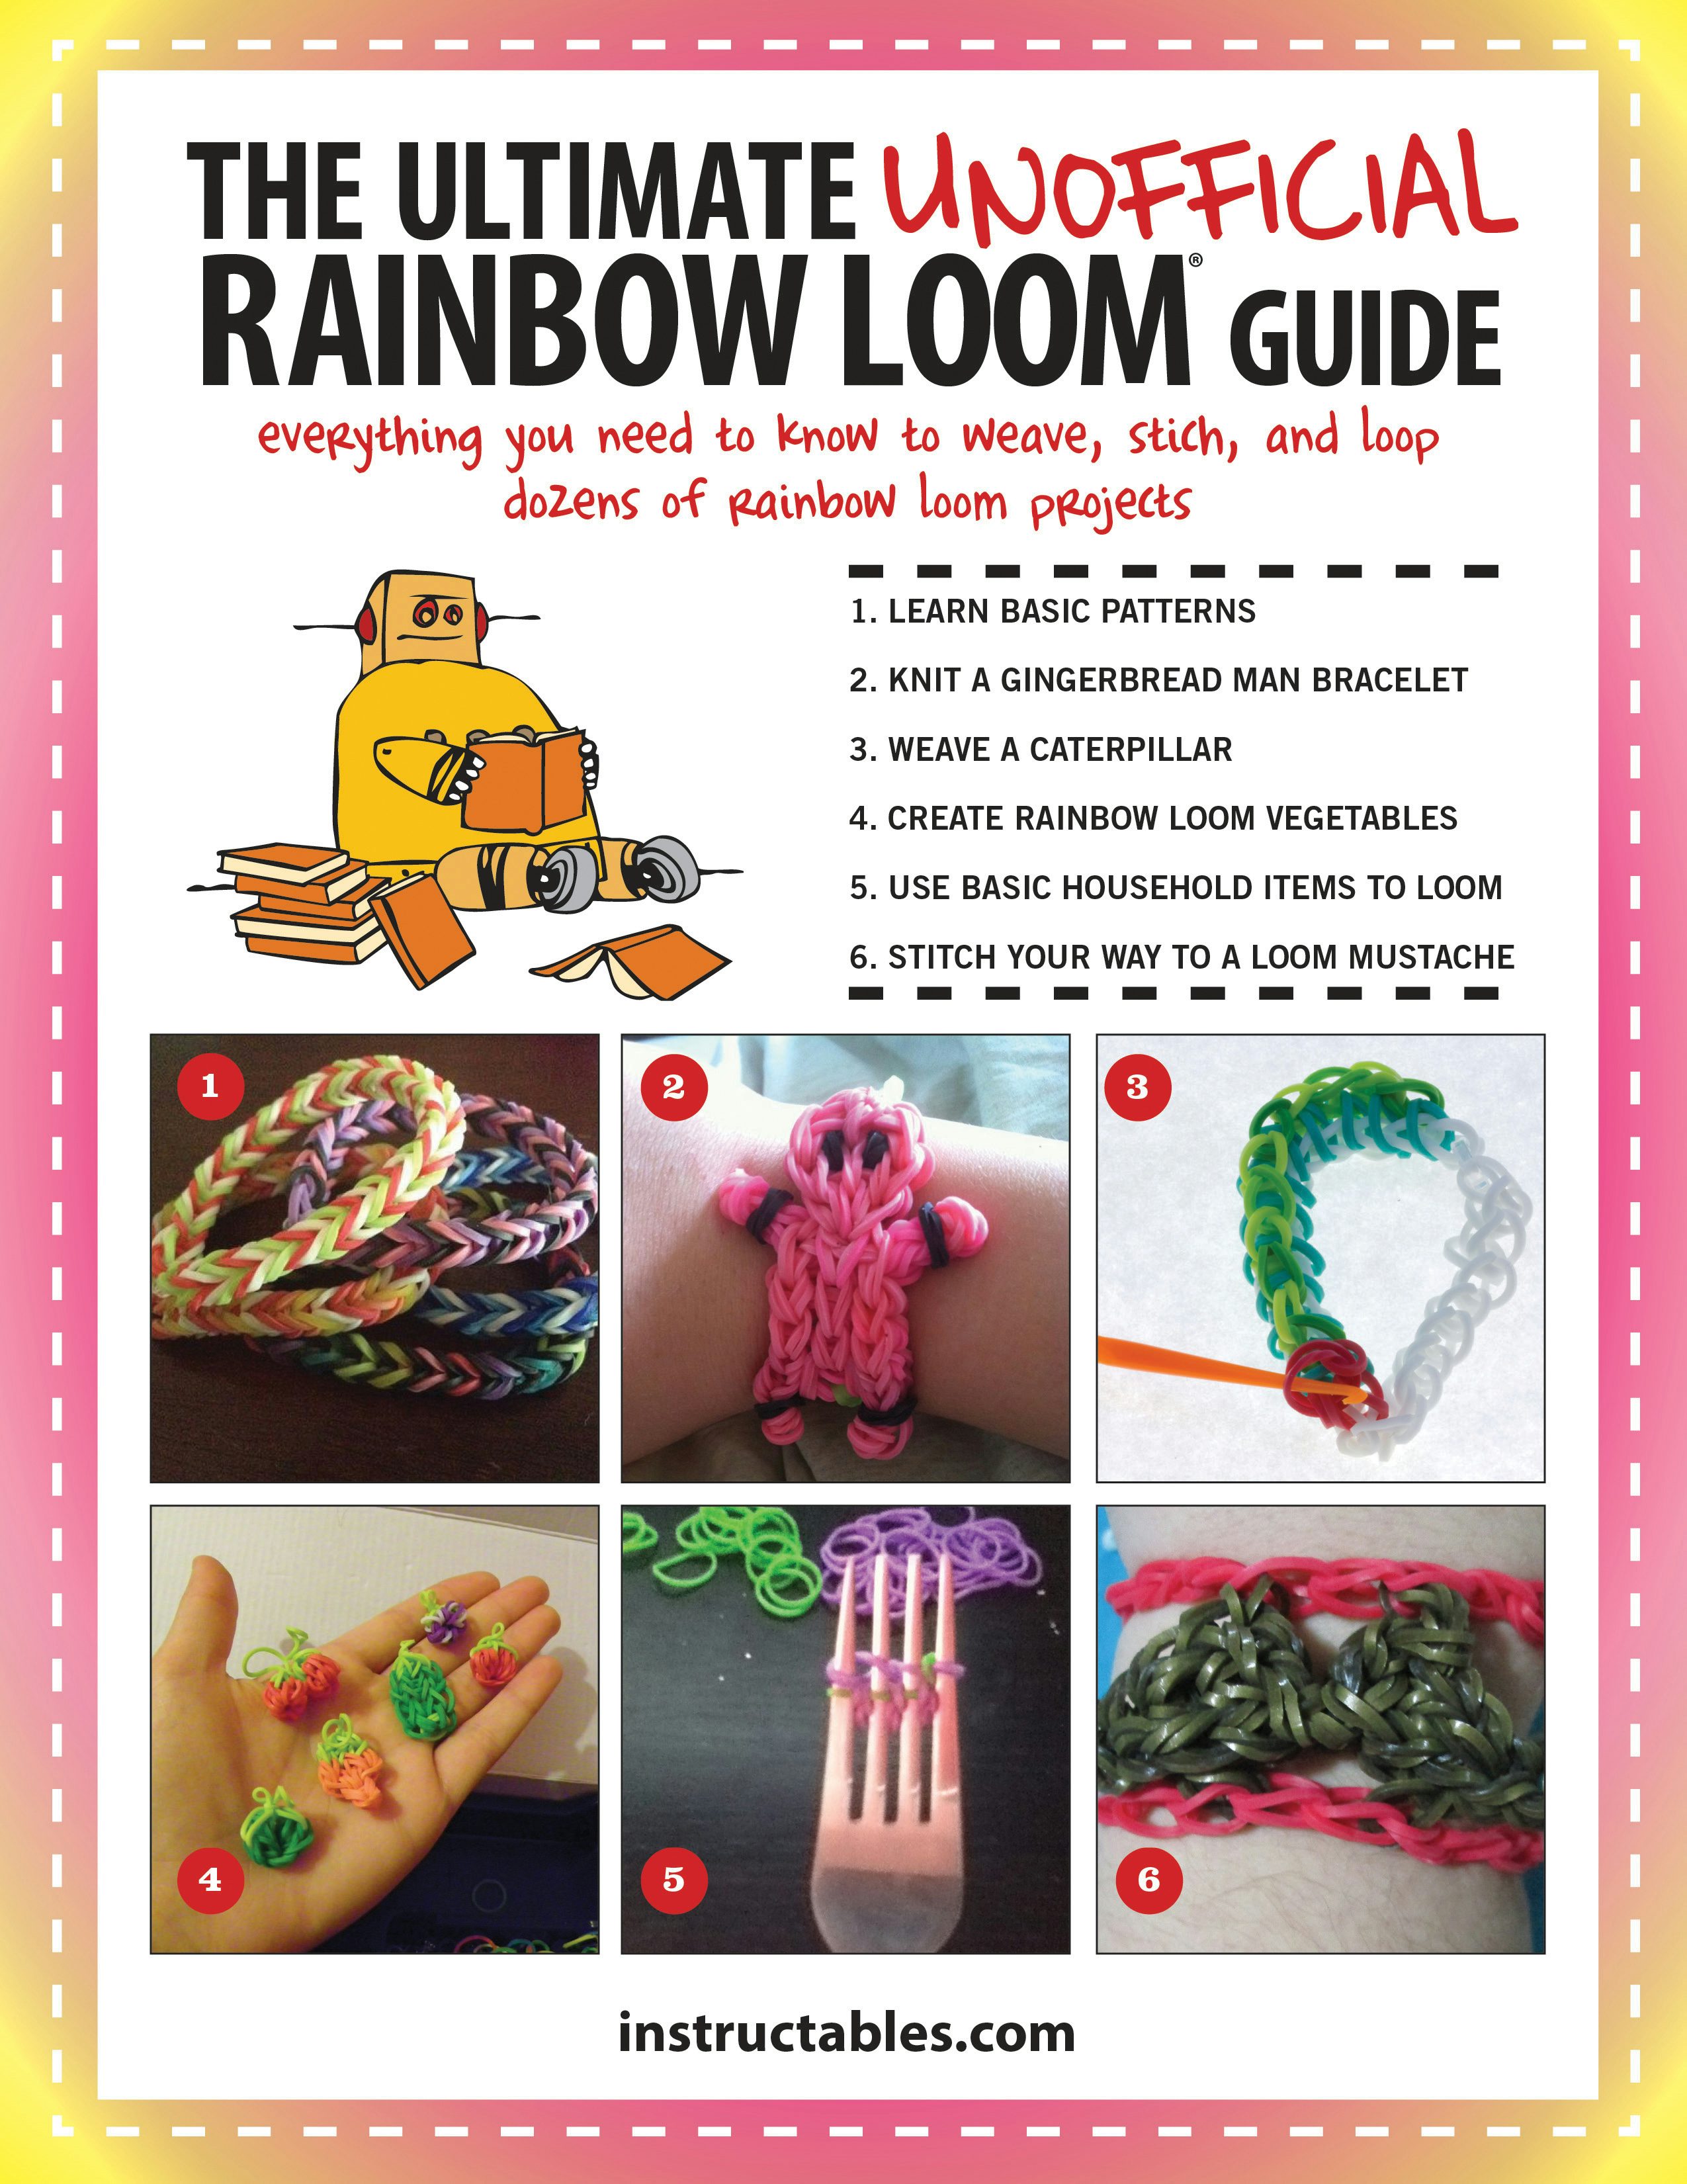 110 Loop bracelets ideas  rainbow loom bracelets rainbow loom patterns  rainbow loom